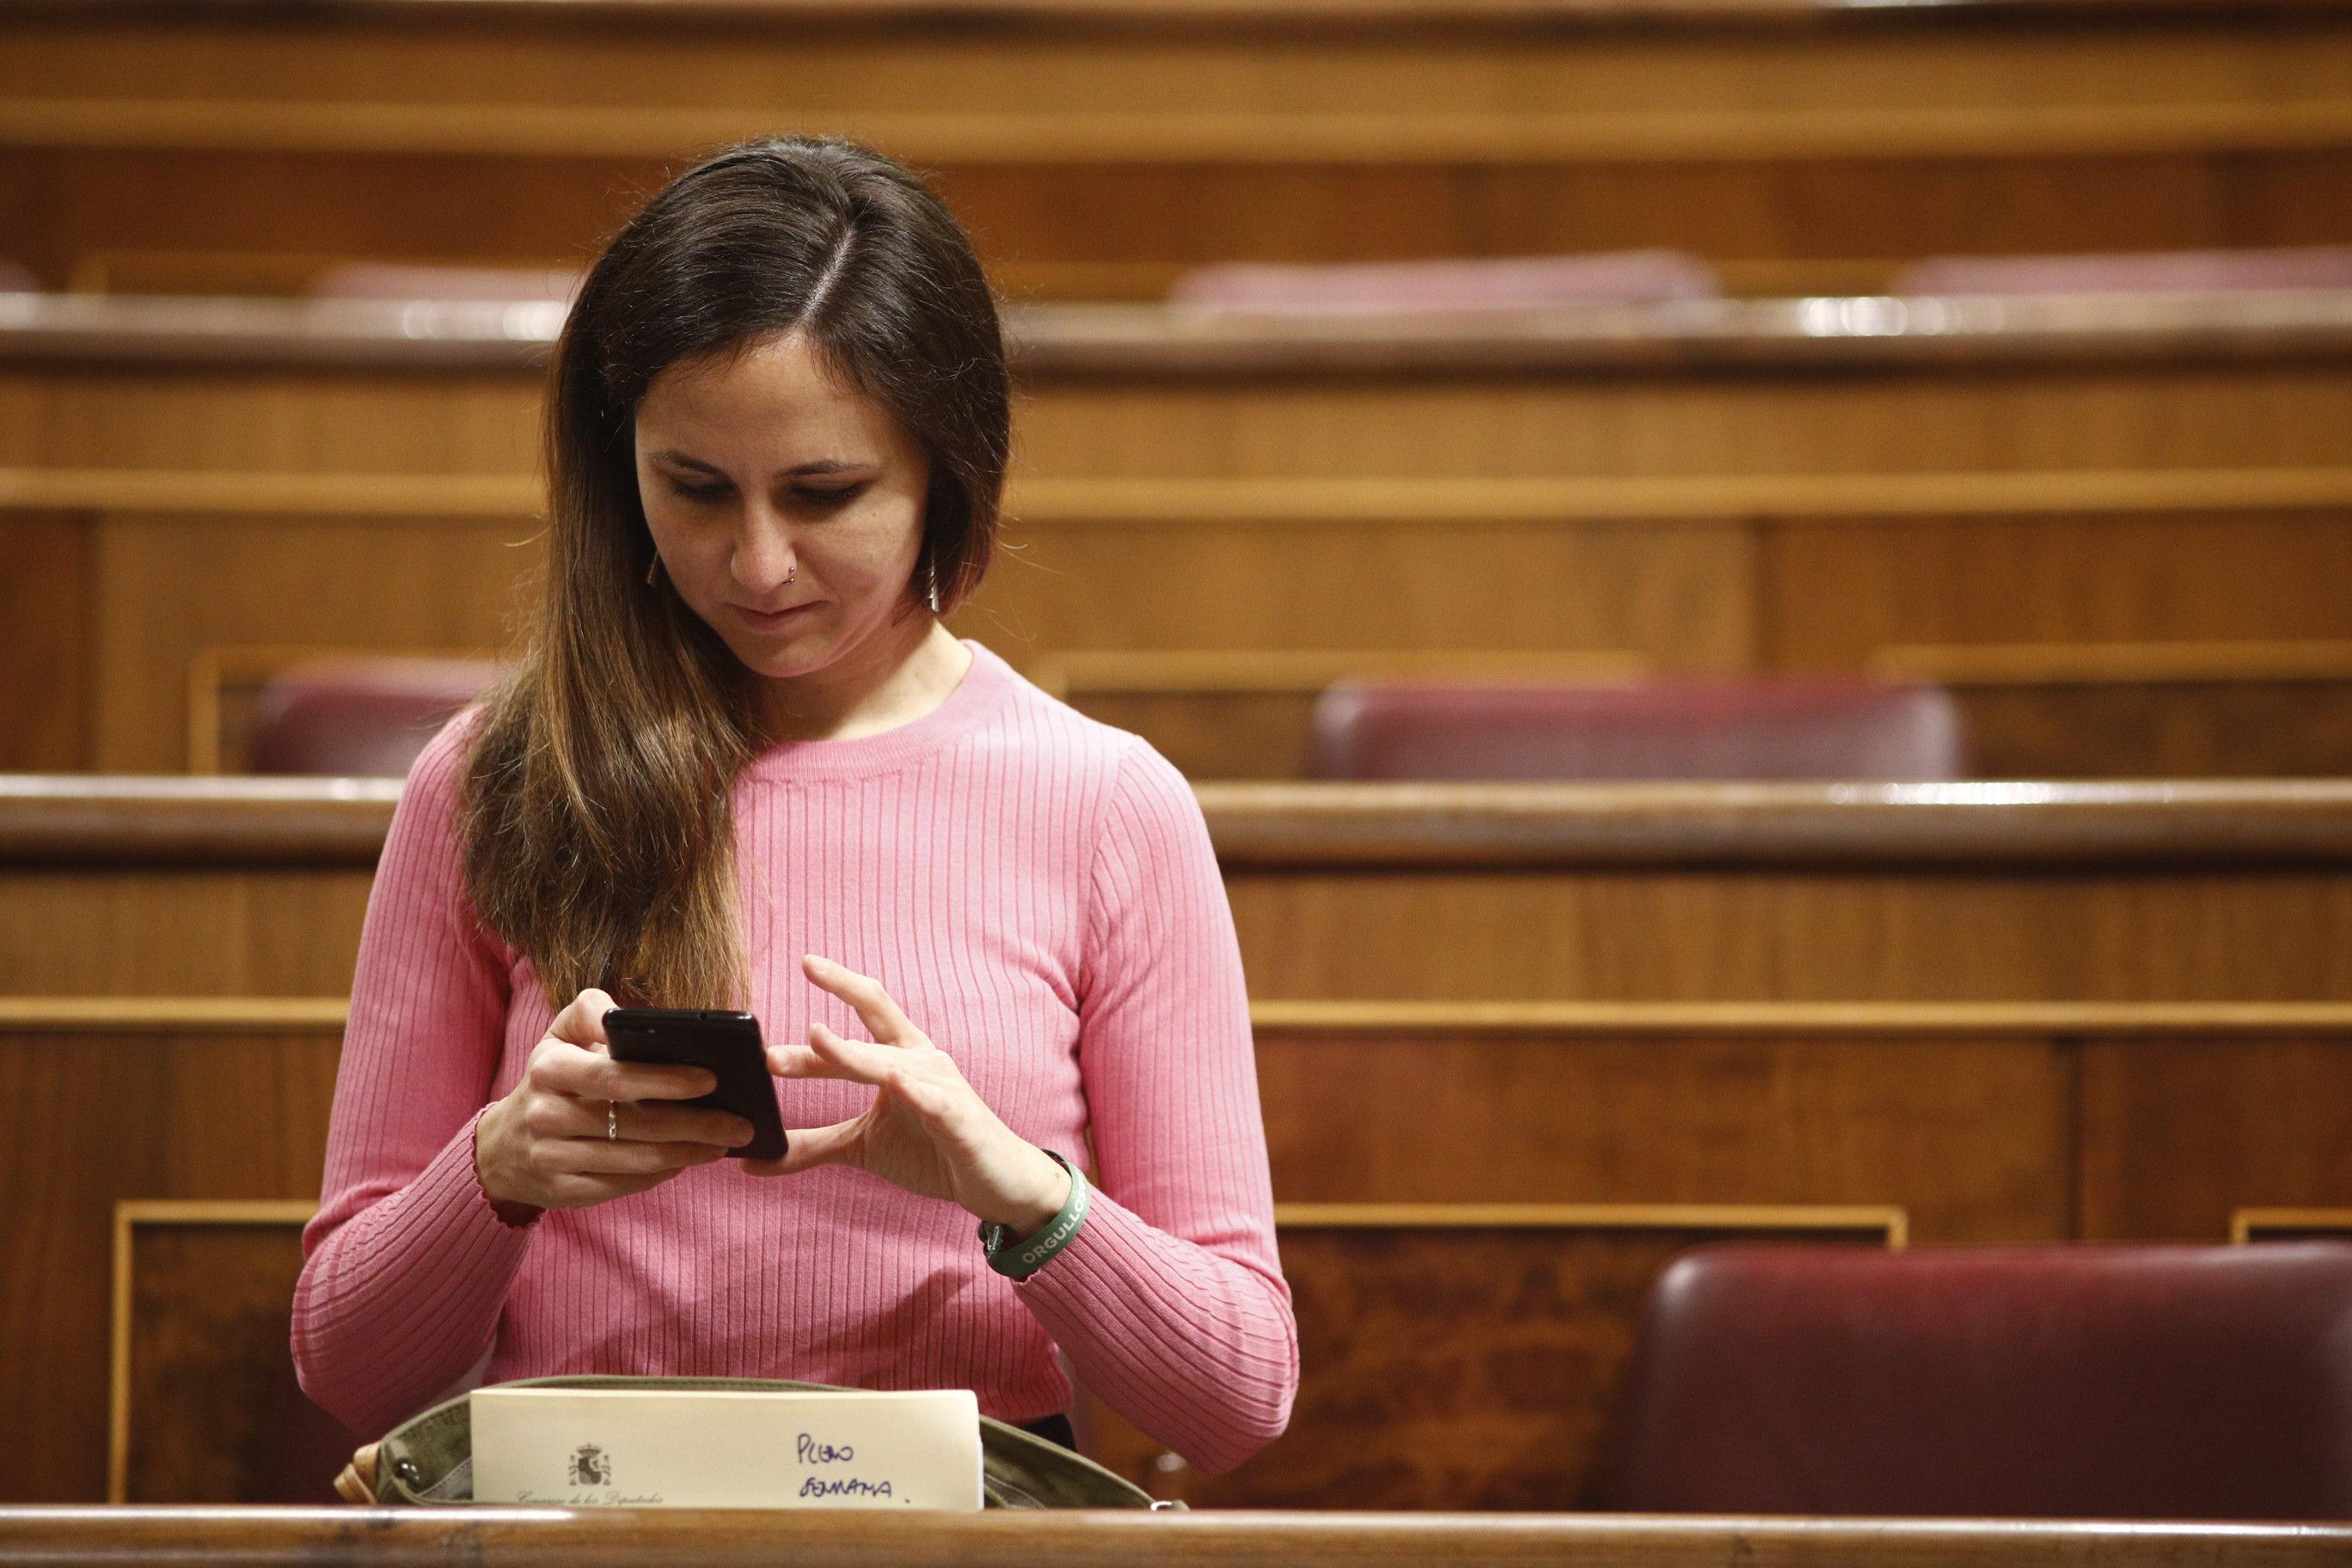 La portavoz de Unidos Podemos en el Congreso de los Diputados Ione Belarra consulta su móvil antes del comienzo de la sesión de control. EP